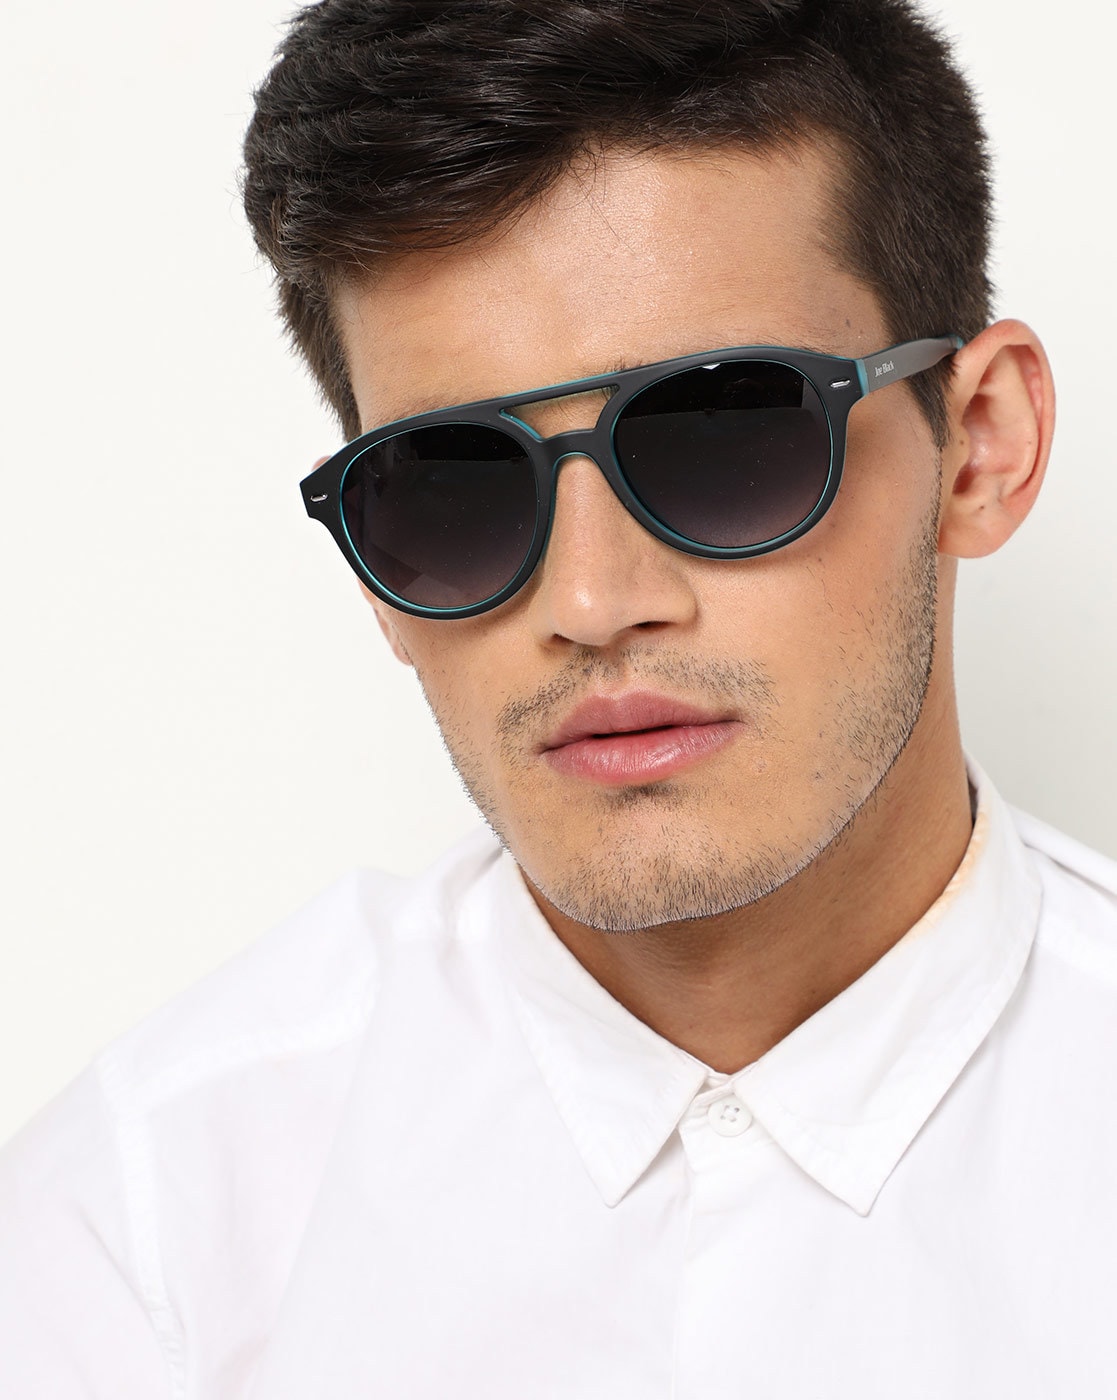 Black Sunglasses for Men by Joe Black 